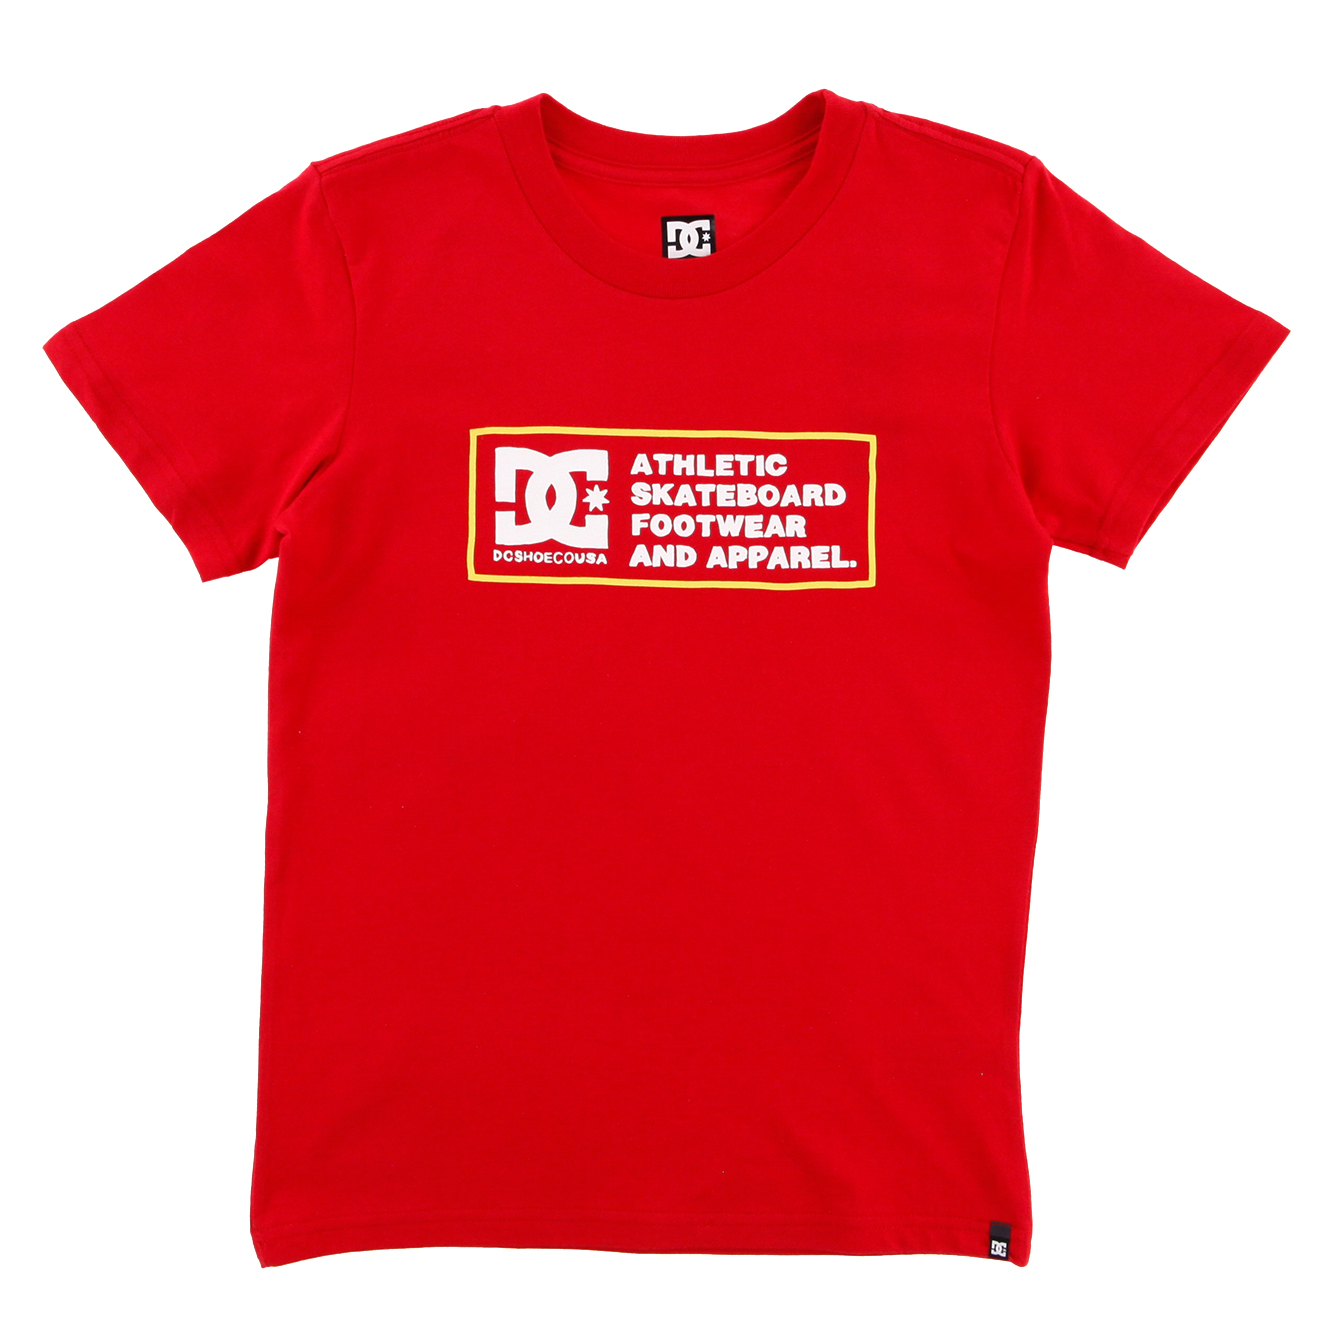 T-Shirt en Coton Logo Message rouge